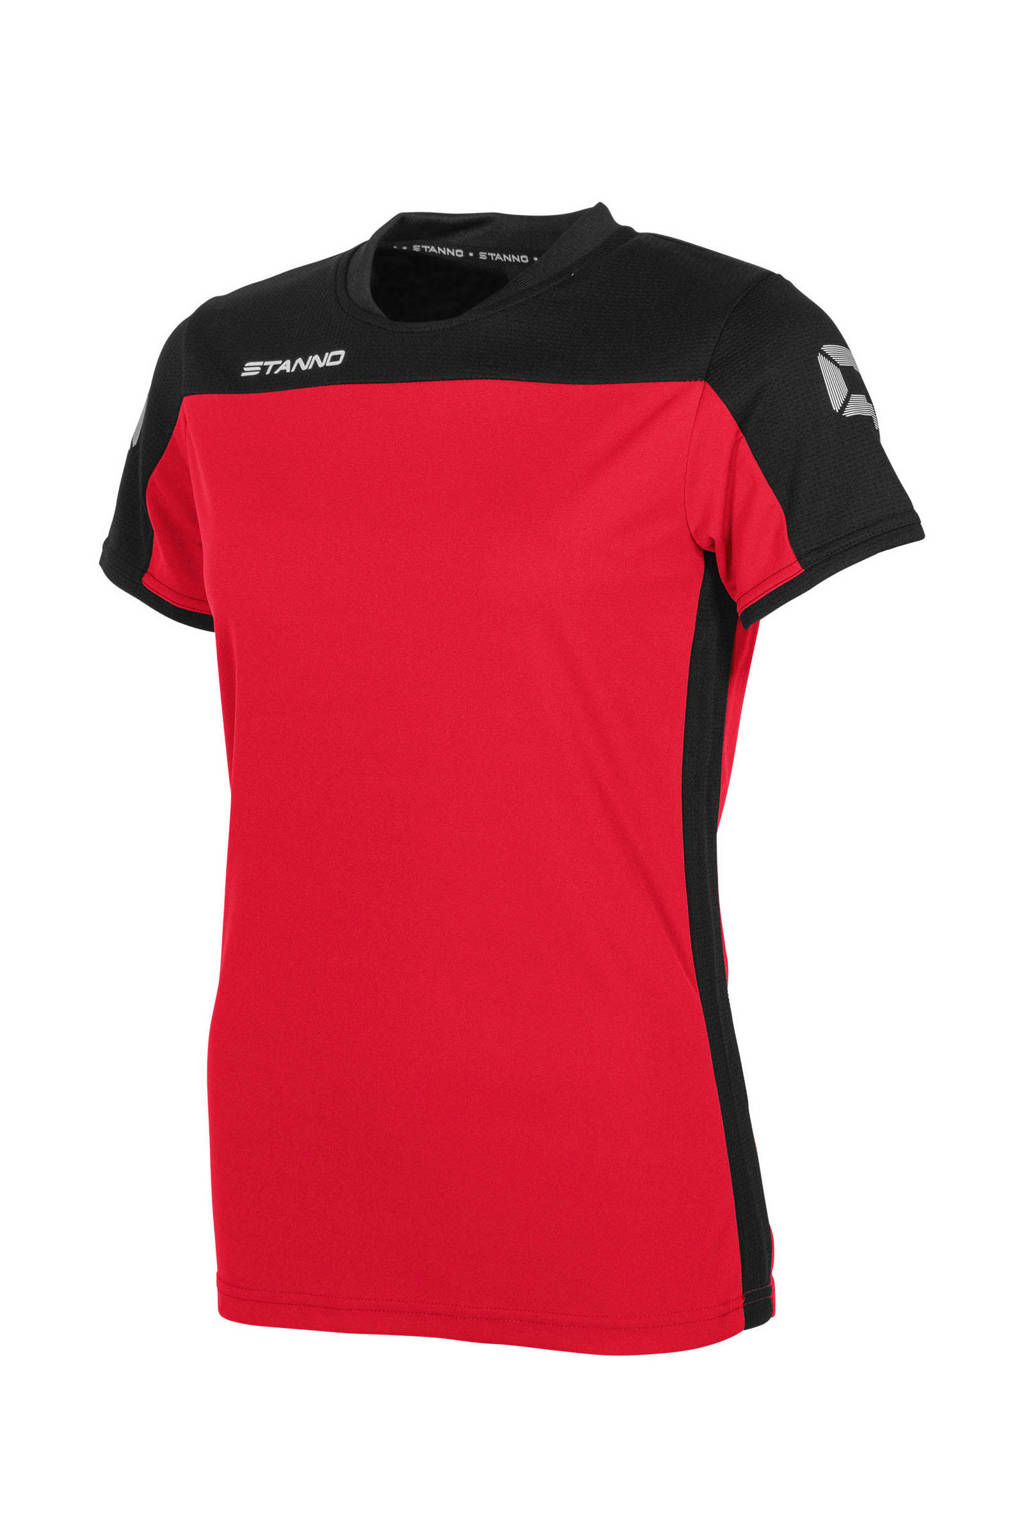 Stanno sport T-shirt rood/zwart, Rood/zwart